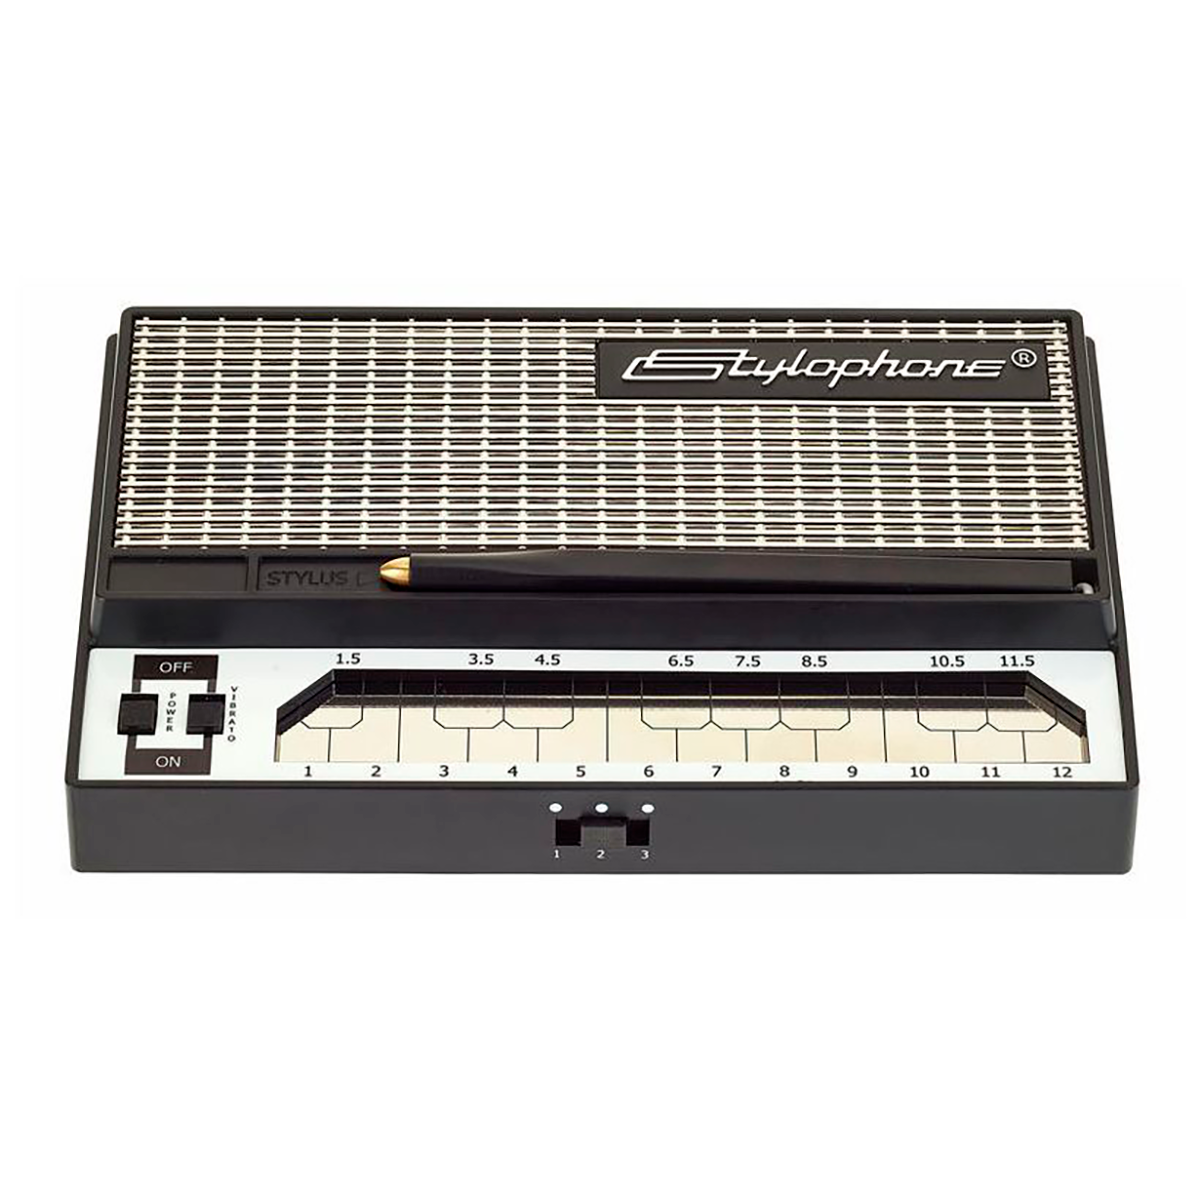 Dubreq Stylophone s1. Аналоговый синтезатор Dubreq Stylophone s1. Stylophone 350s. Стилофон Gen x-1. Стилофон цена